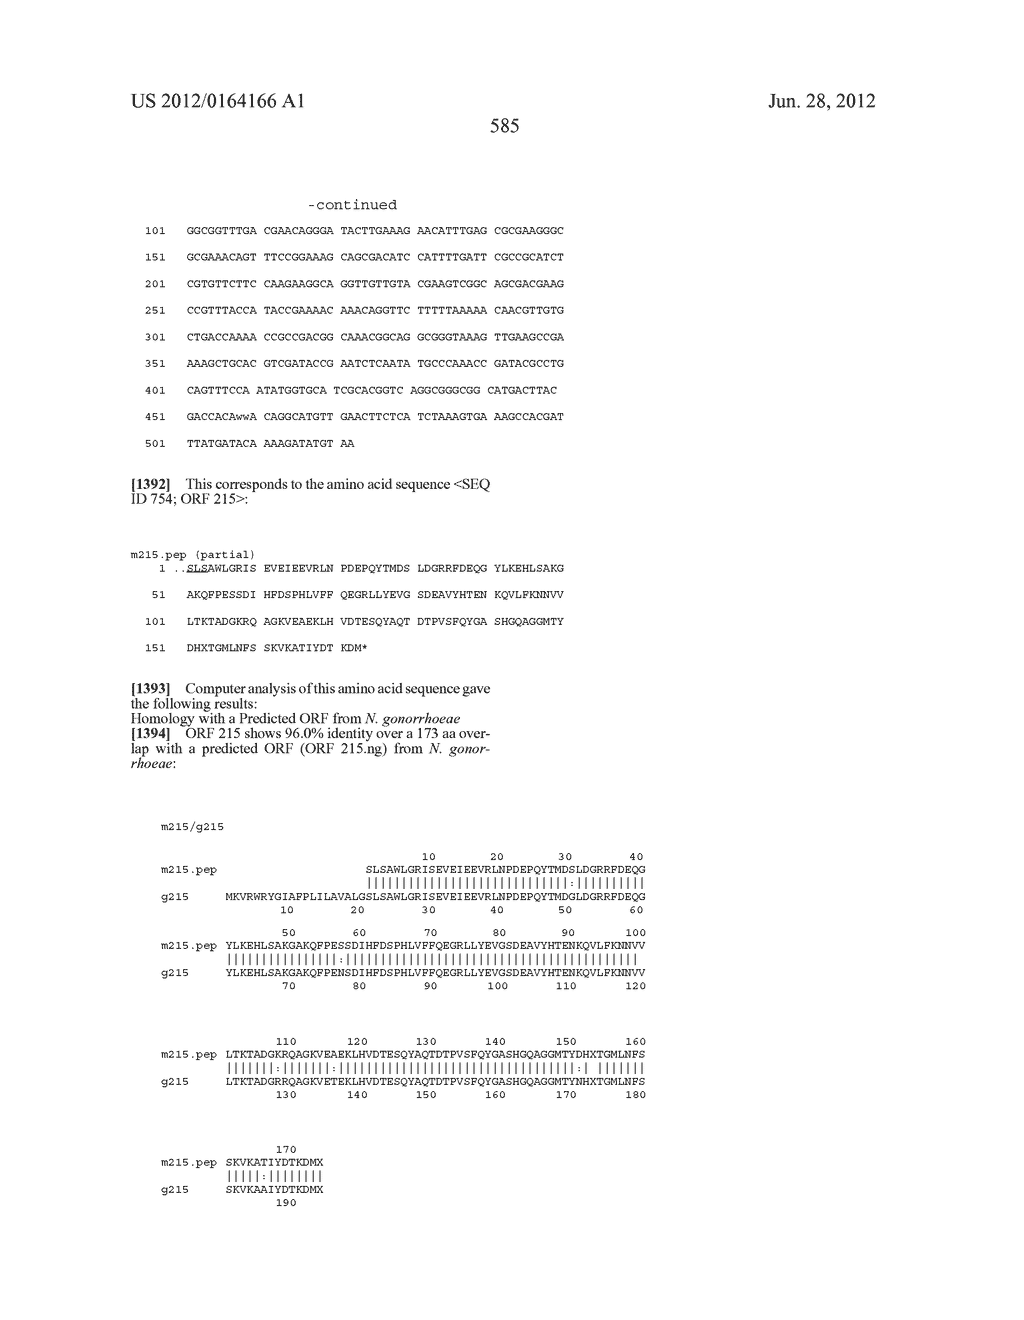 NEISSERIA MENINGITIDIS ANTIGENS AND COMPOSITIONS - diagram, schematic, and image 617